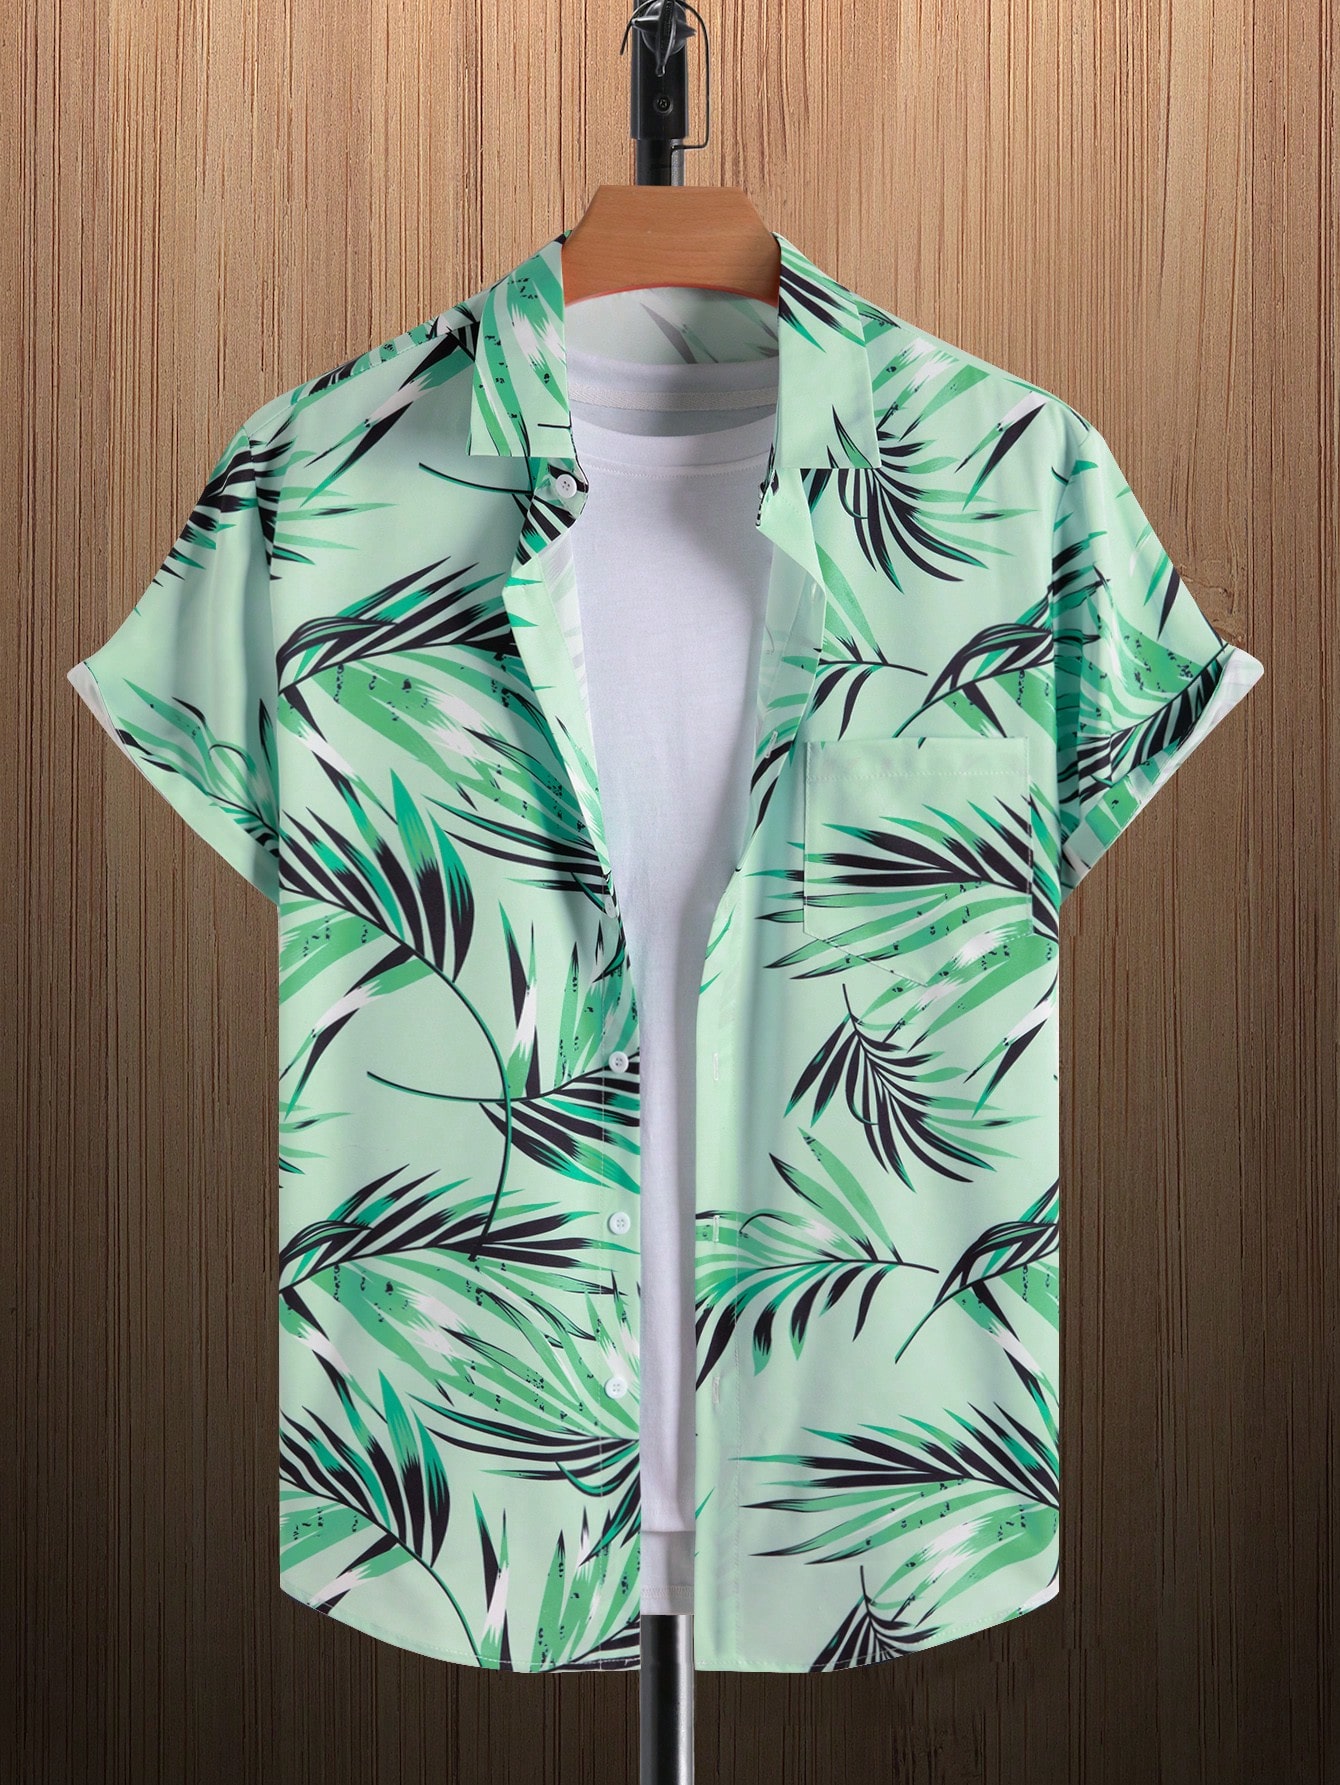 Мужская рубашка с короткими рукавами и принтом листьев на пуговицах Manfinity RSRT, мятно-зеленый